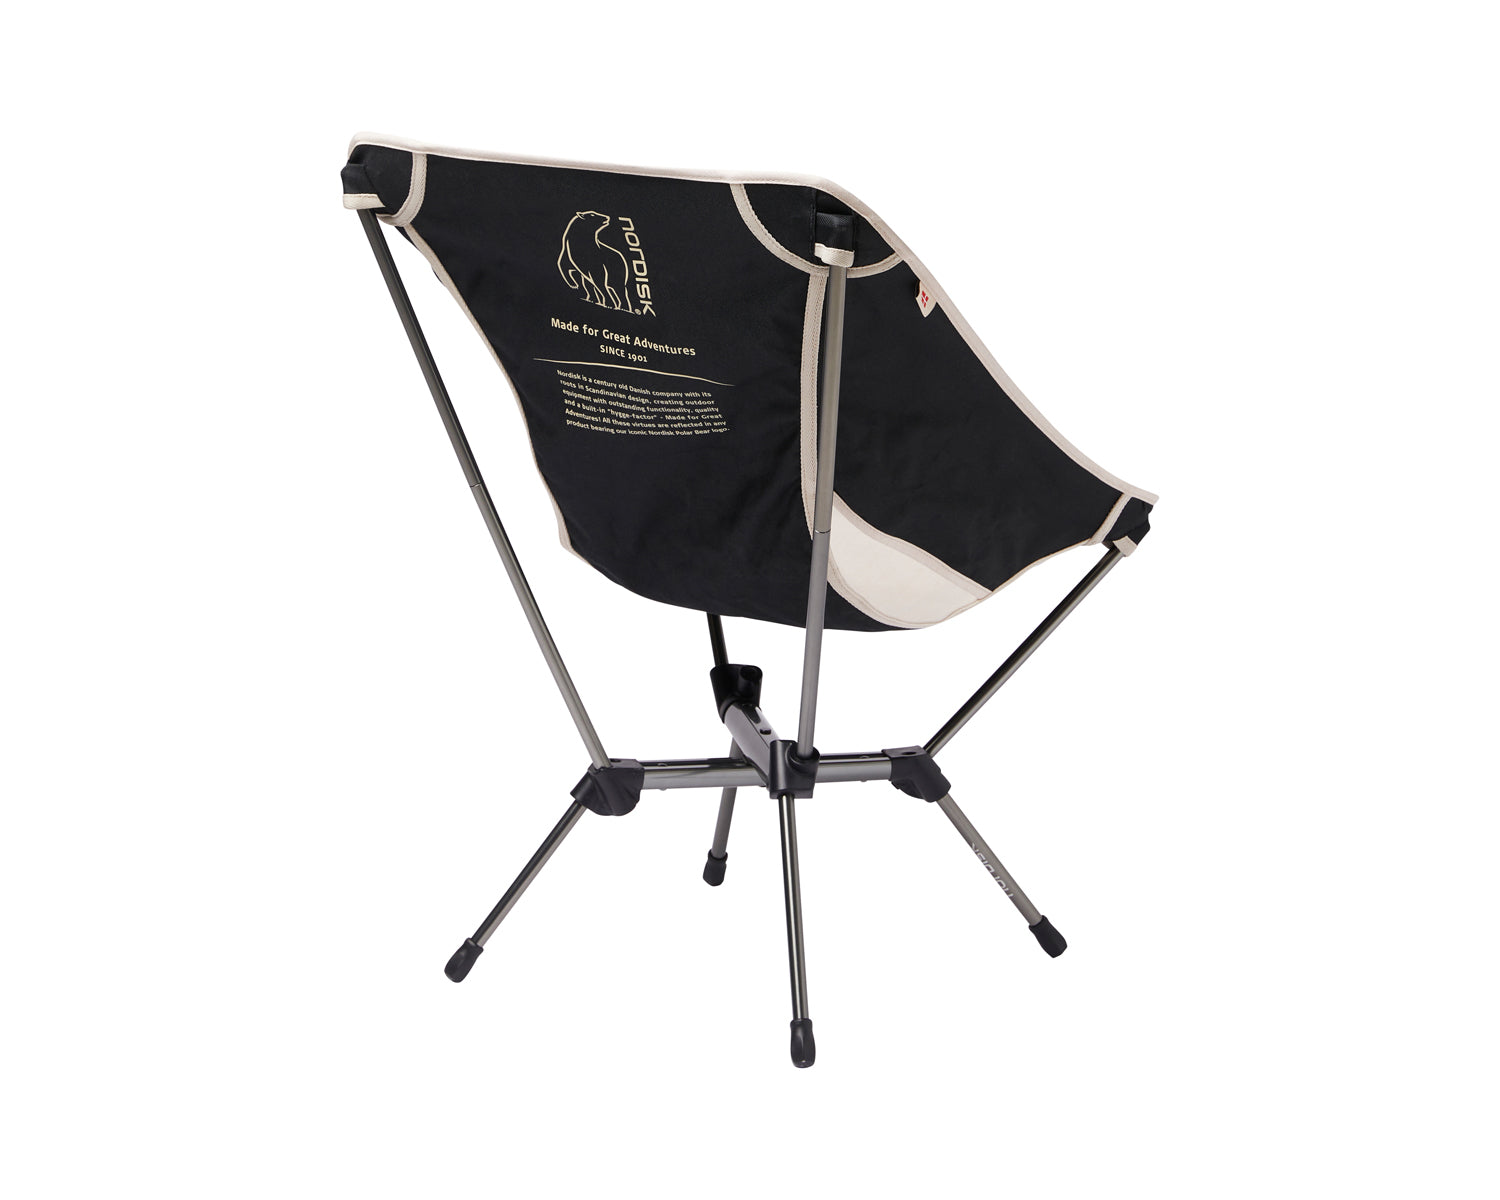 Marielund chair - Sandshell